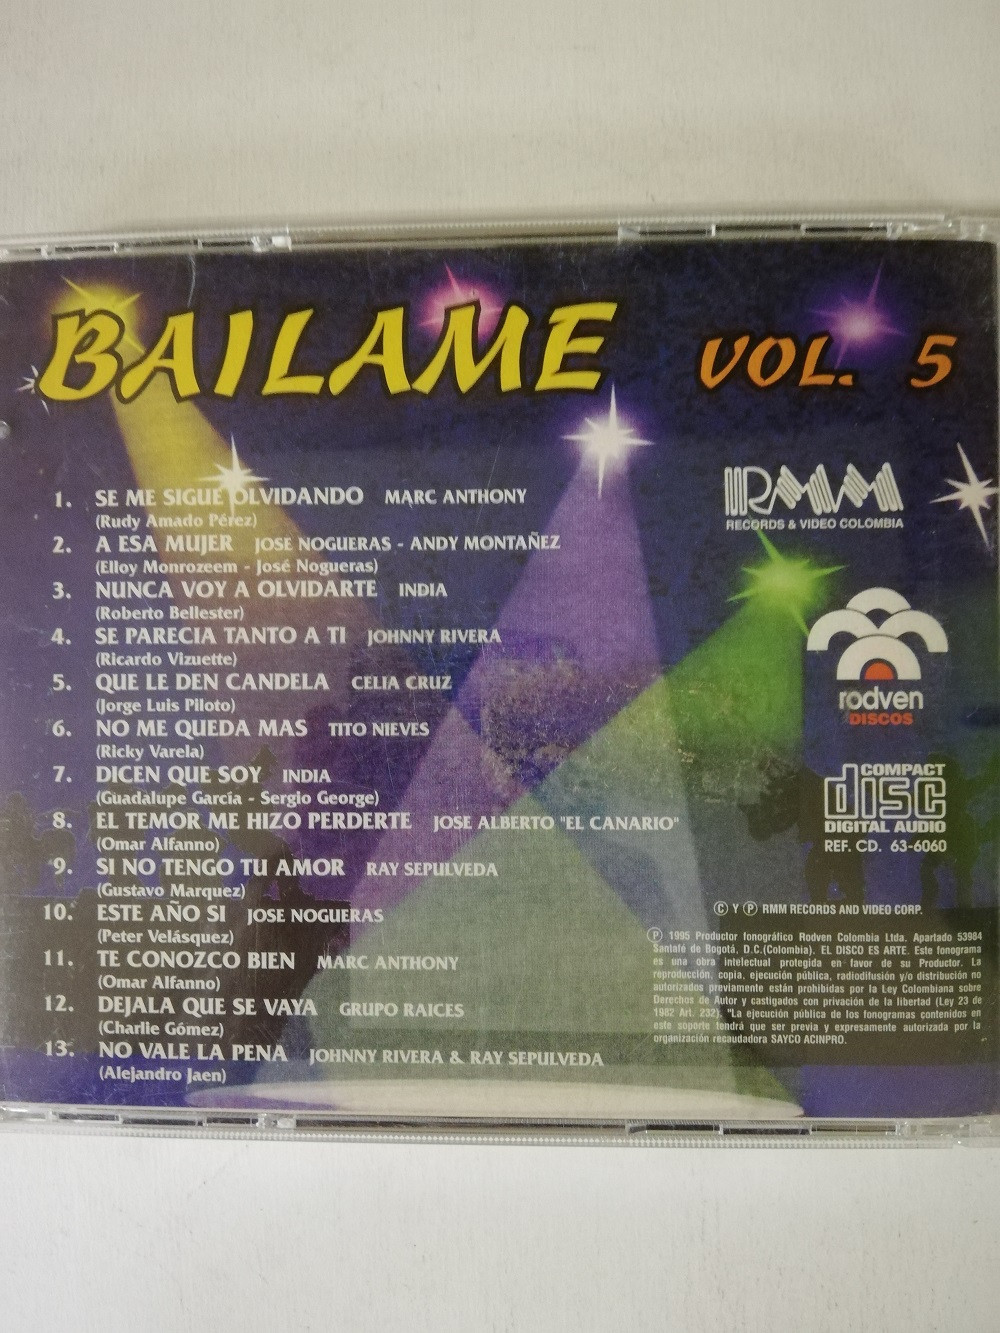 Imagen CD BAILAME - BAILAME VOL. 5 2